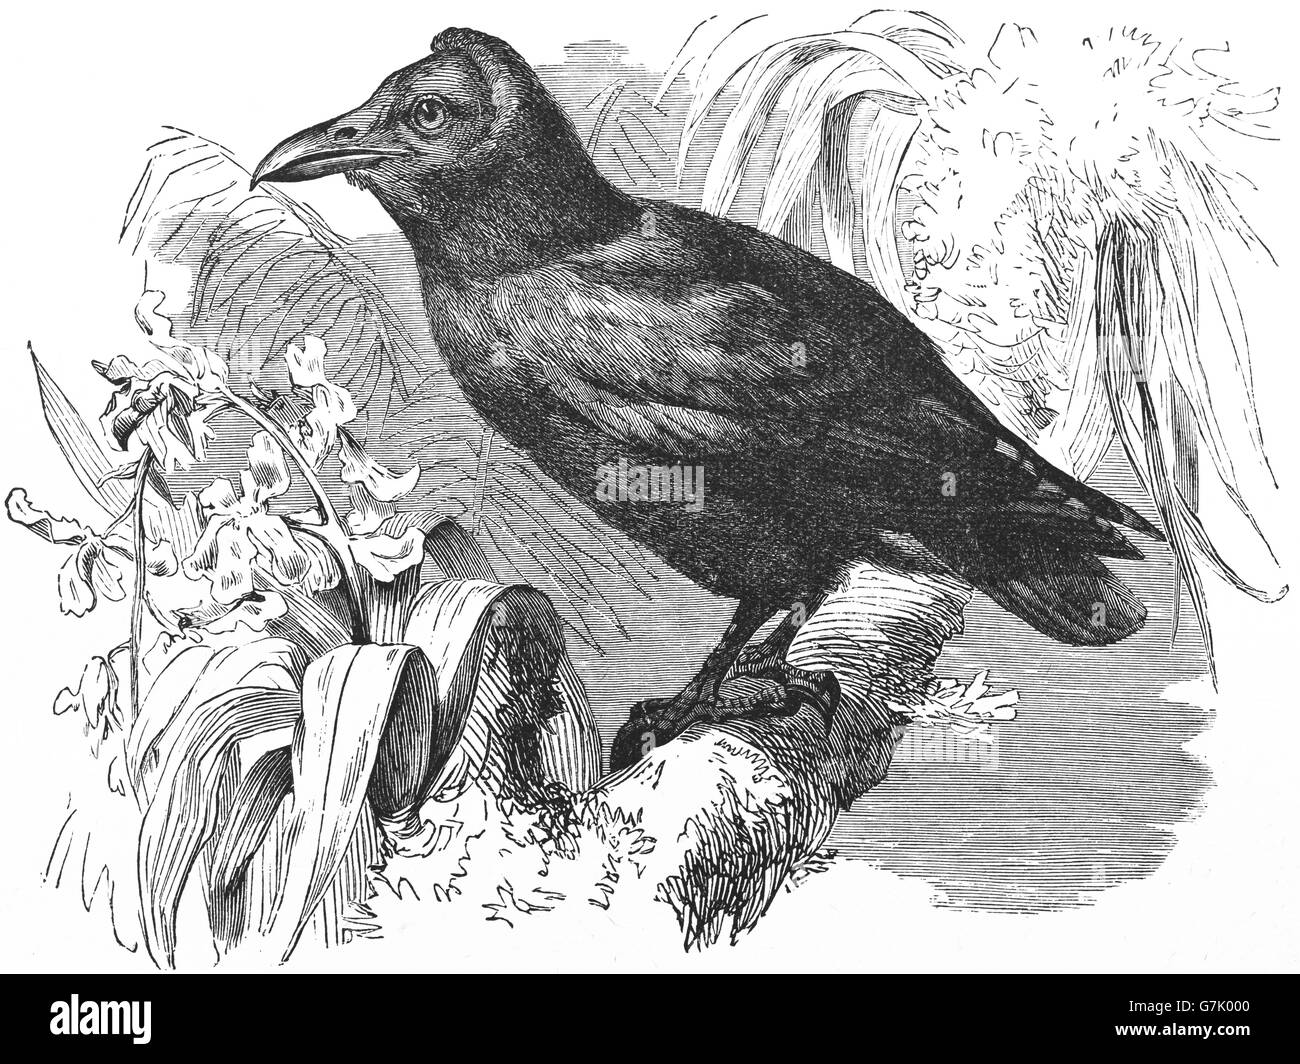 Capuchinbird, calfbird, Perissocephalus tricolore, illustrazione dal libro datato 1904 Foto Stock